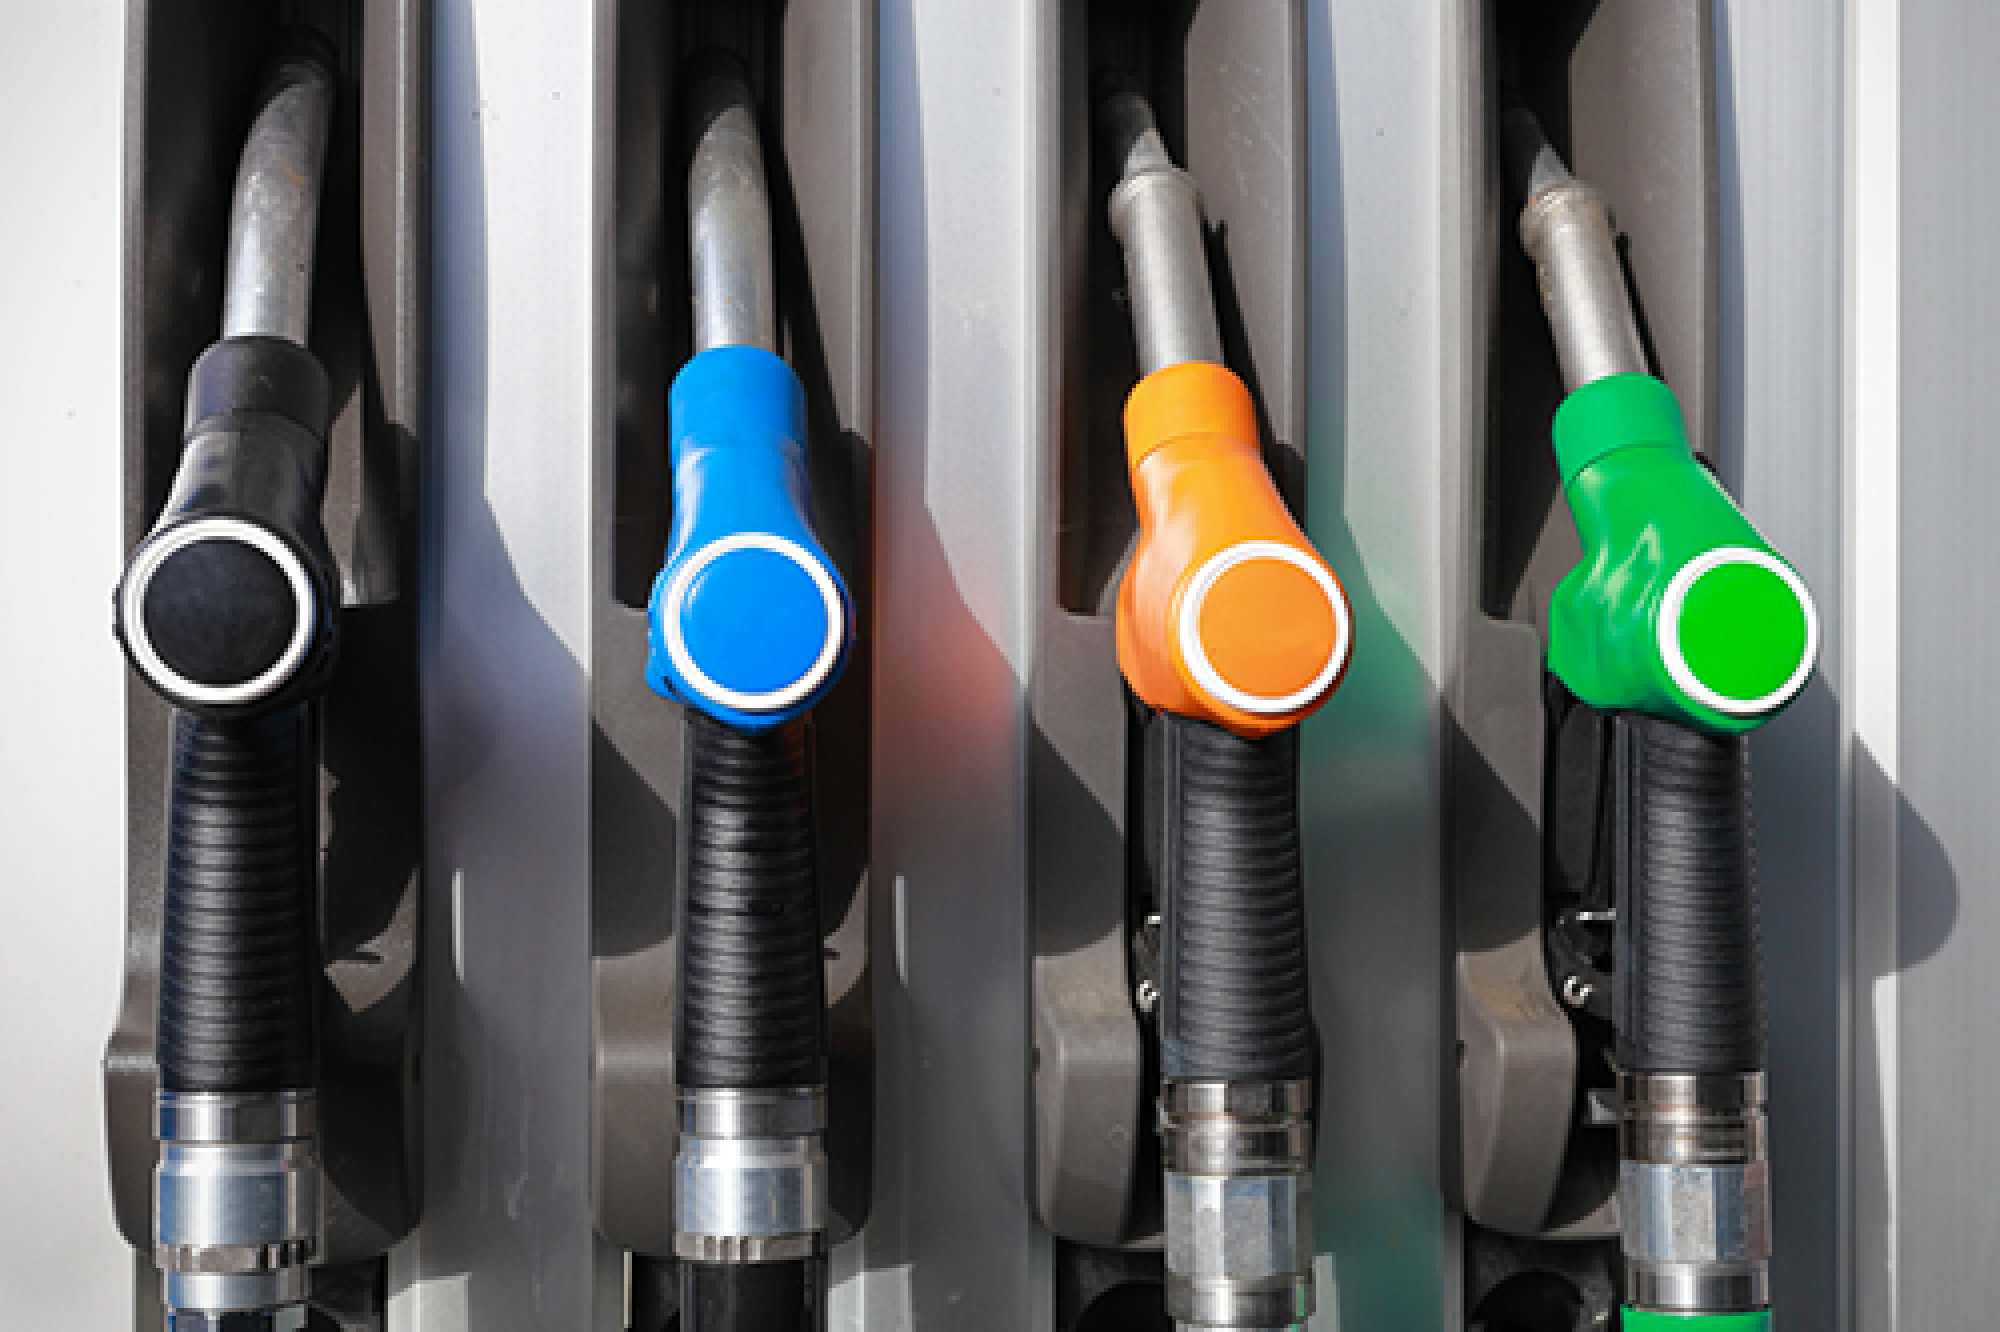 Remise de 15 centimes sur le prix des carburants : un bon début, mais pas une solution durable